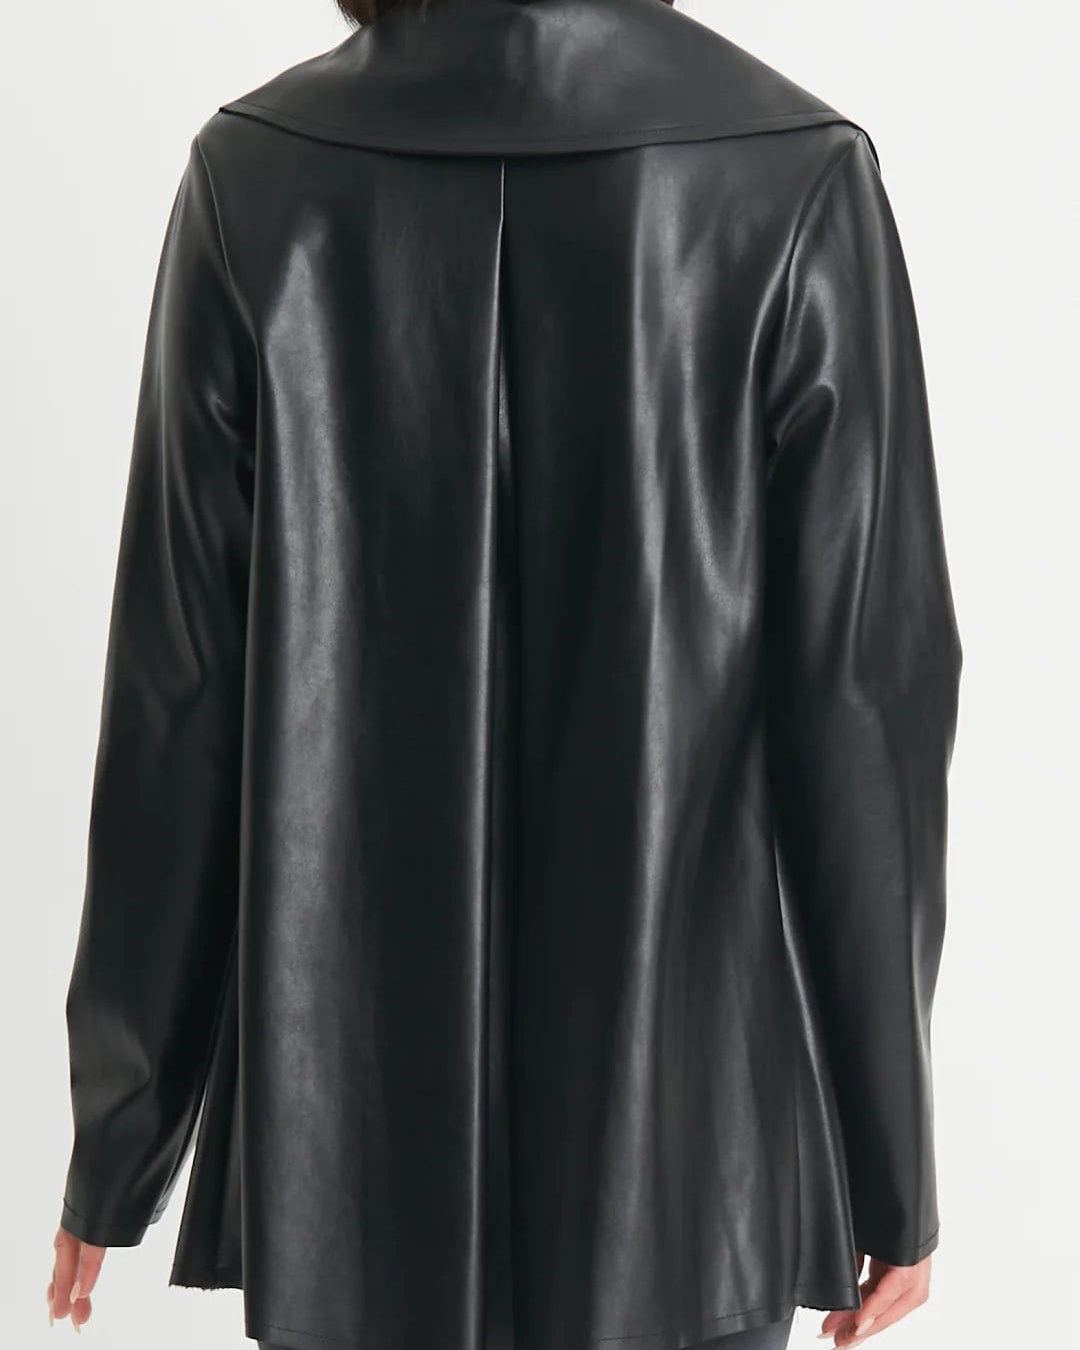 PLANET by Lauren G Women's Jackets Black / 2 Planet Vegan Leather Plead Jacket